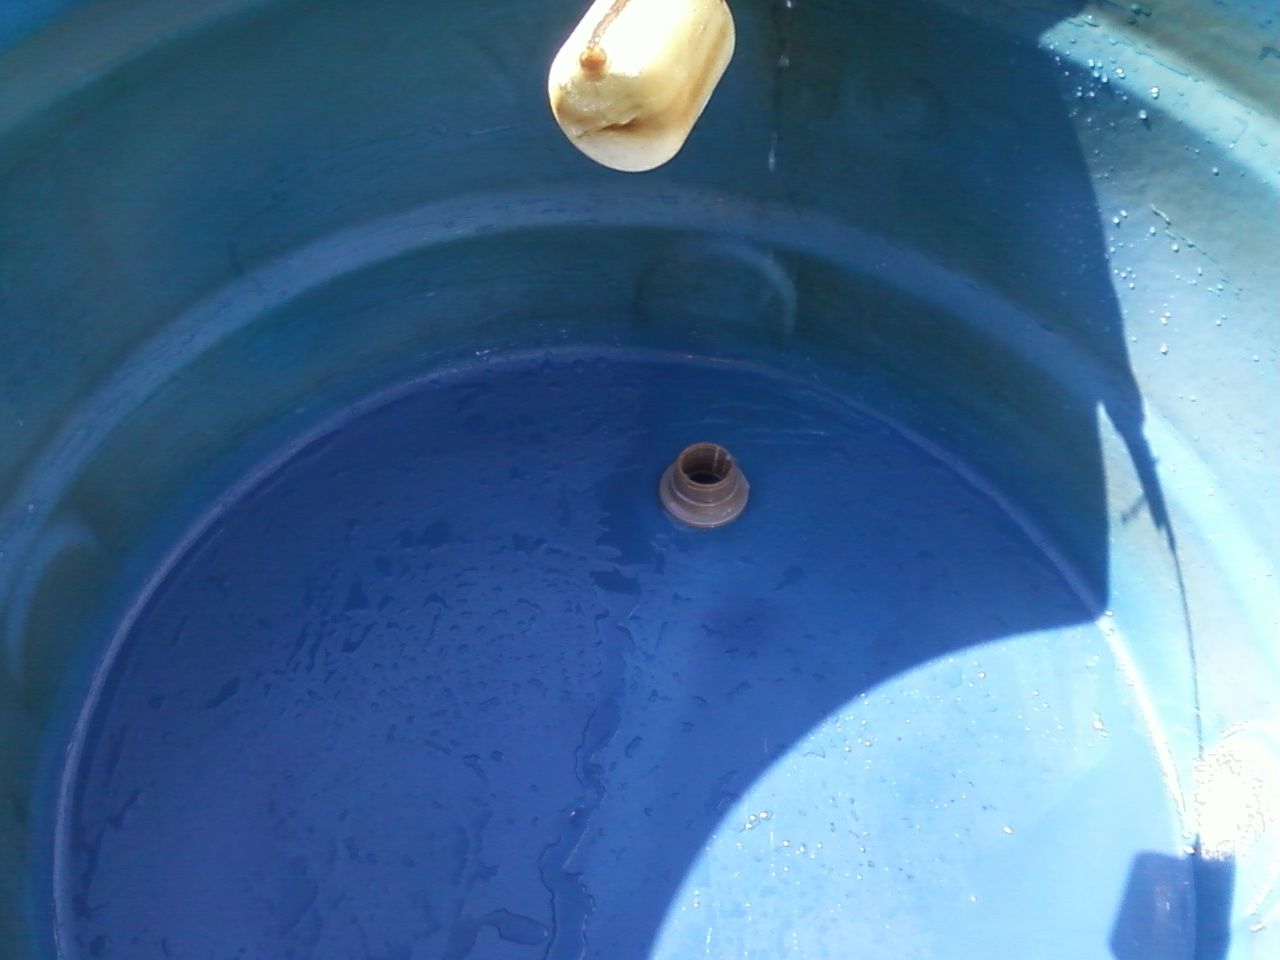 Reparo de Caixa de água Preço Jardim Bonfiglioli - Instalação de Caixa de água